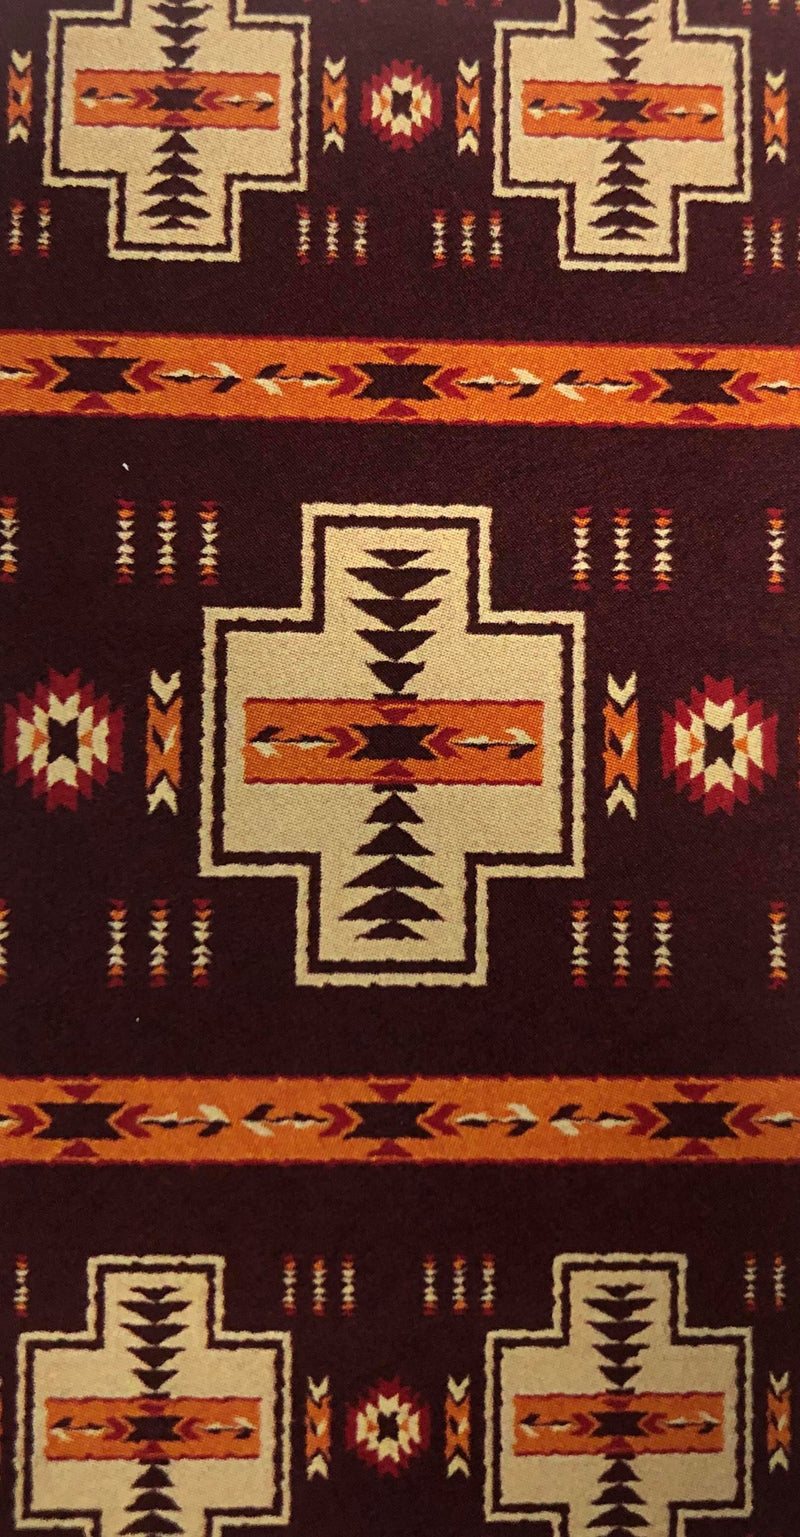 Navajo Towels